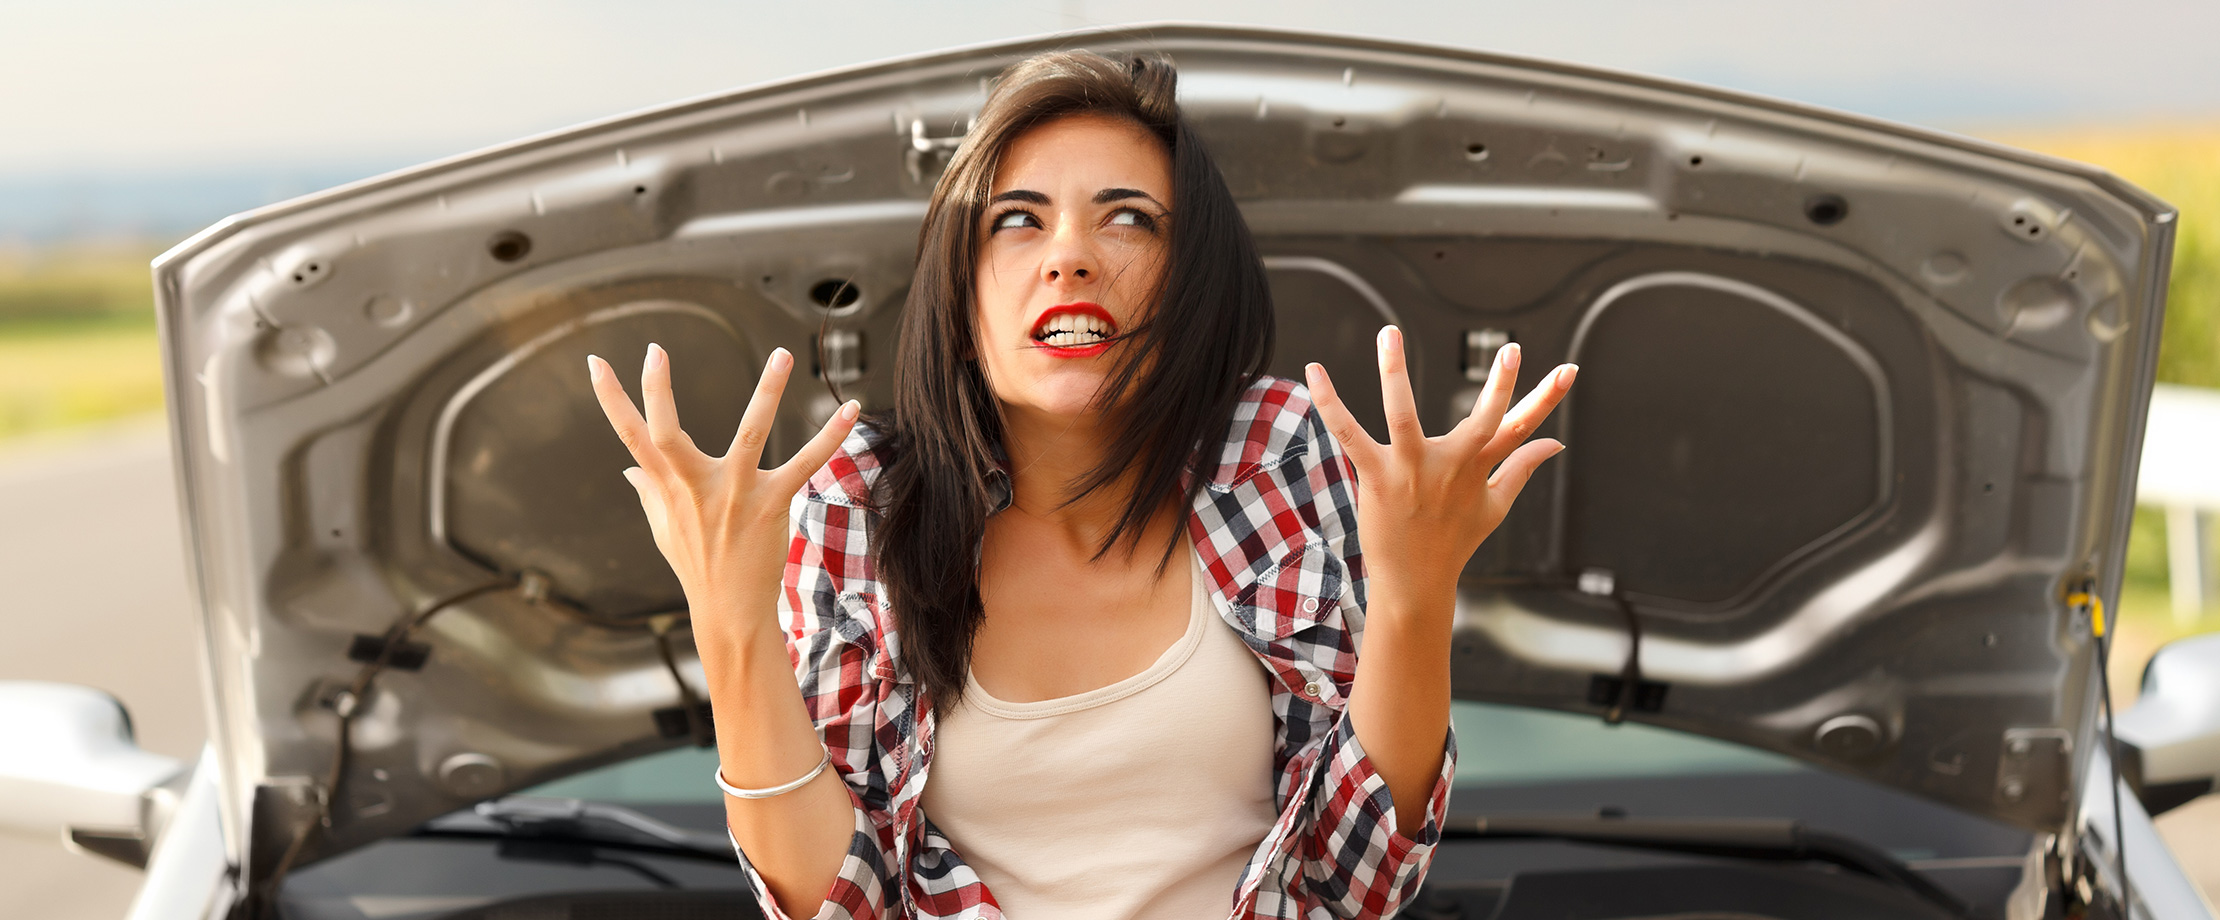 Eine schwarzhaarige Frau sitzt vor der geöffneten Motorhaube ihres Autos. Ihr Gesicht ist genervt verzogen und sie hat die Hände in einer verzweifelten Geste erhoben.